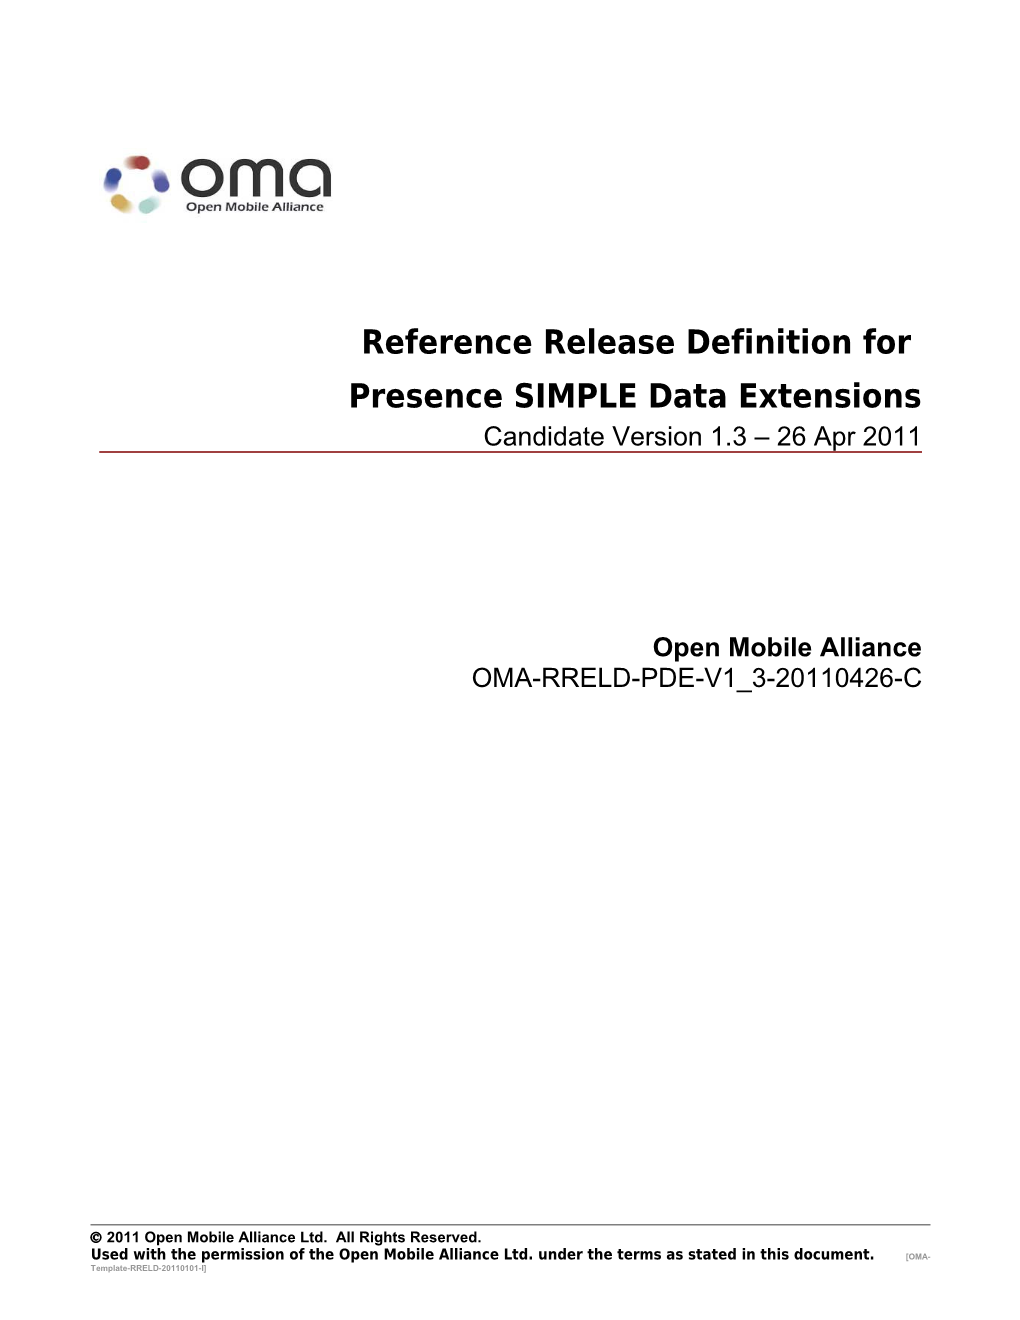 OMA-RRELD-PDE-V1 3-20110426-Cpage 1 V(10)